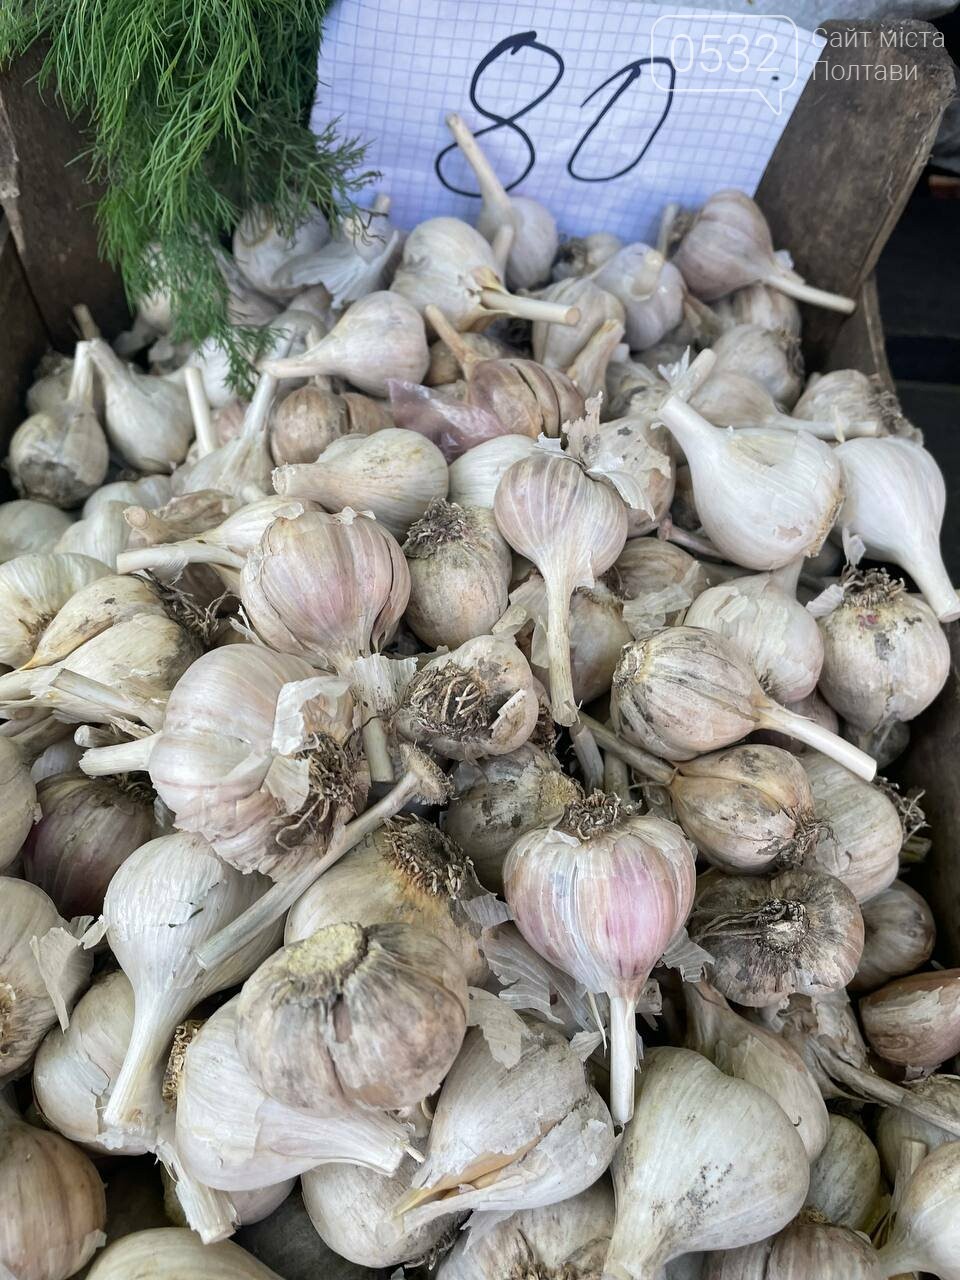 Попри початок осені на «Хитрому» ринку Полтави все ще літні ціни: кавуни і картопля – від 5, перець – від 10, а малина - від 35